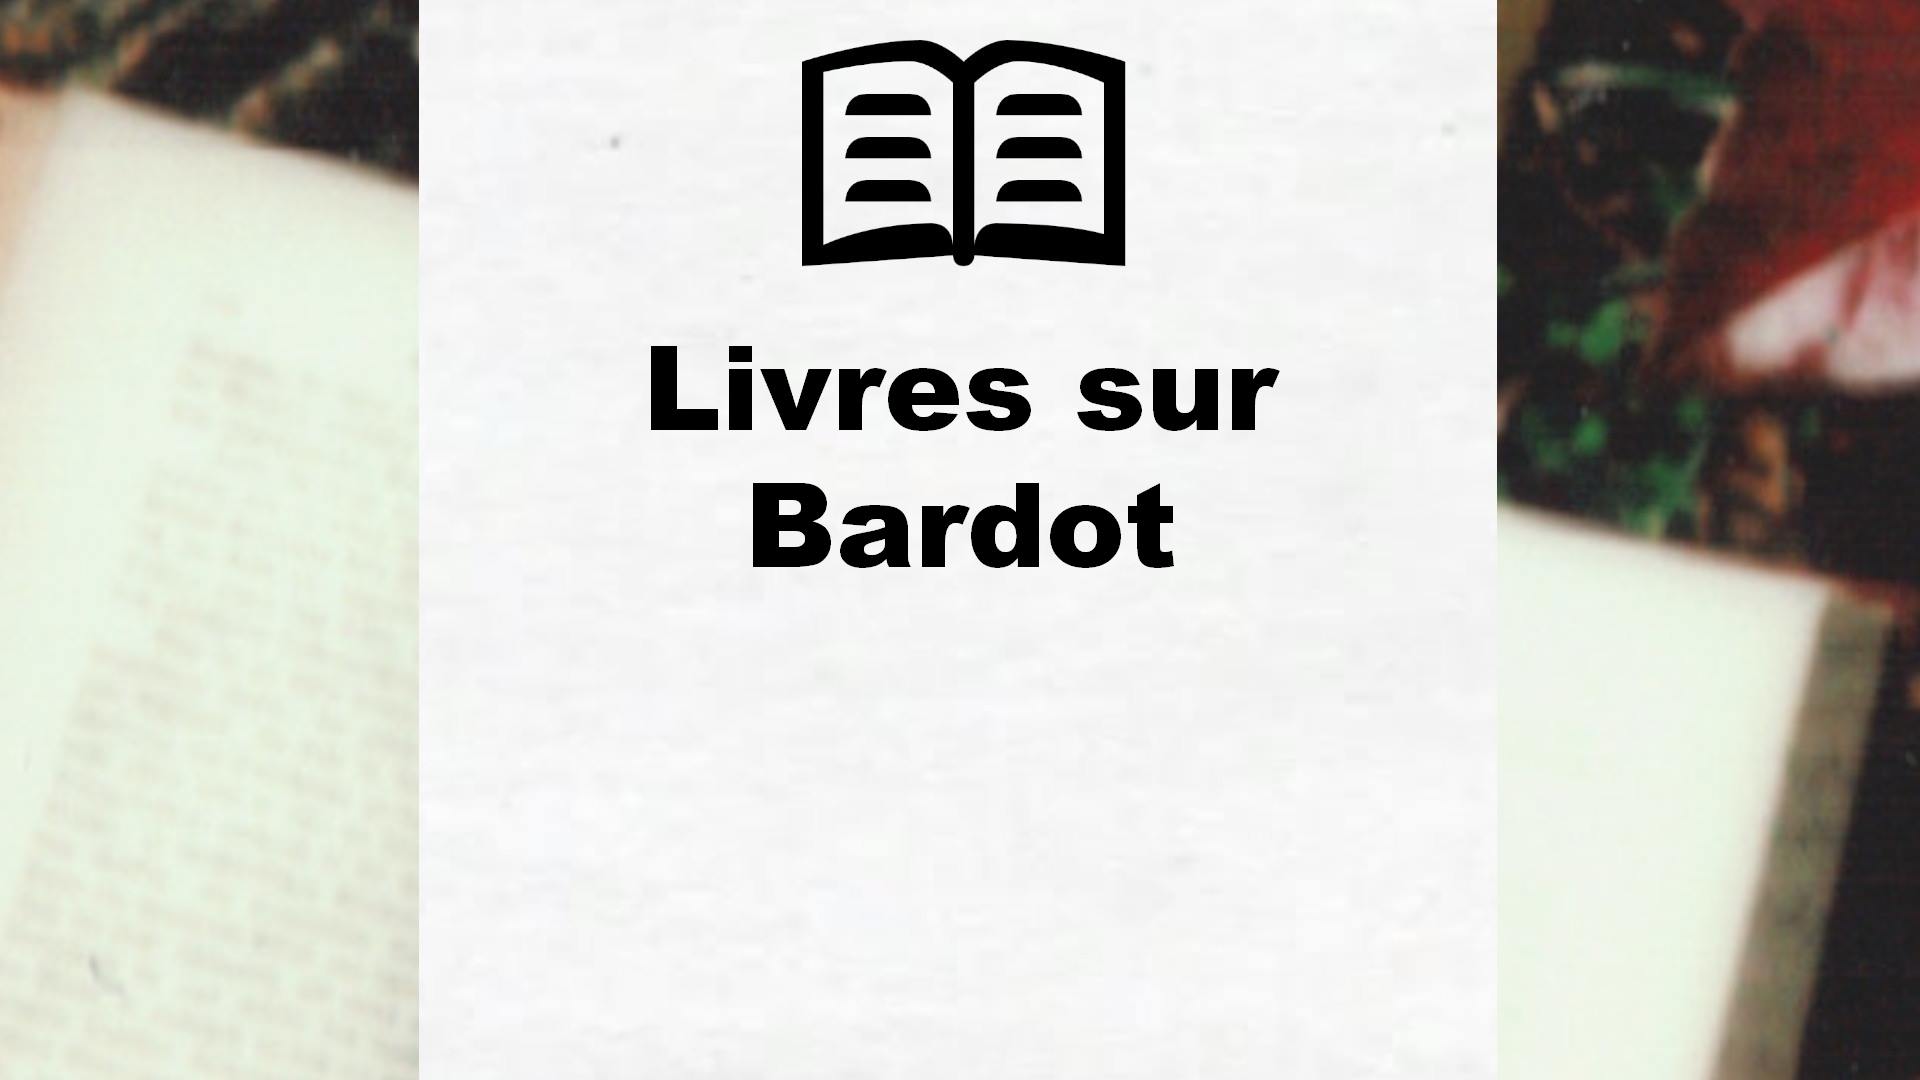 Livres sur Bardot